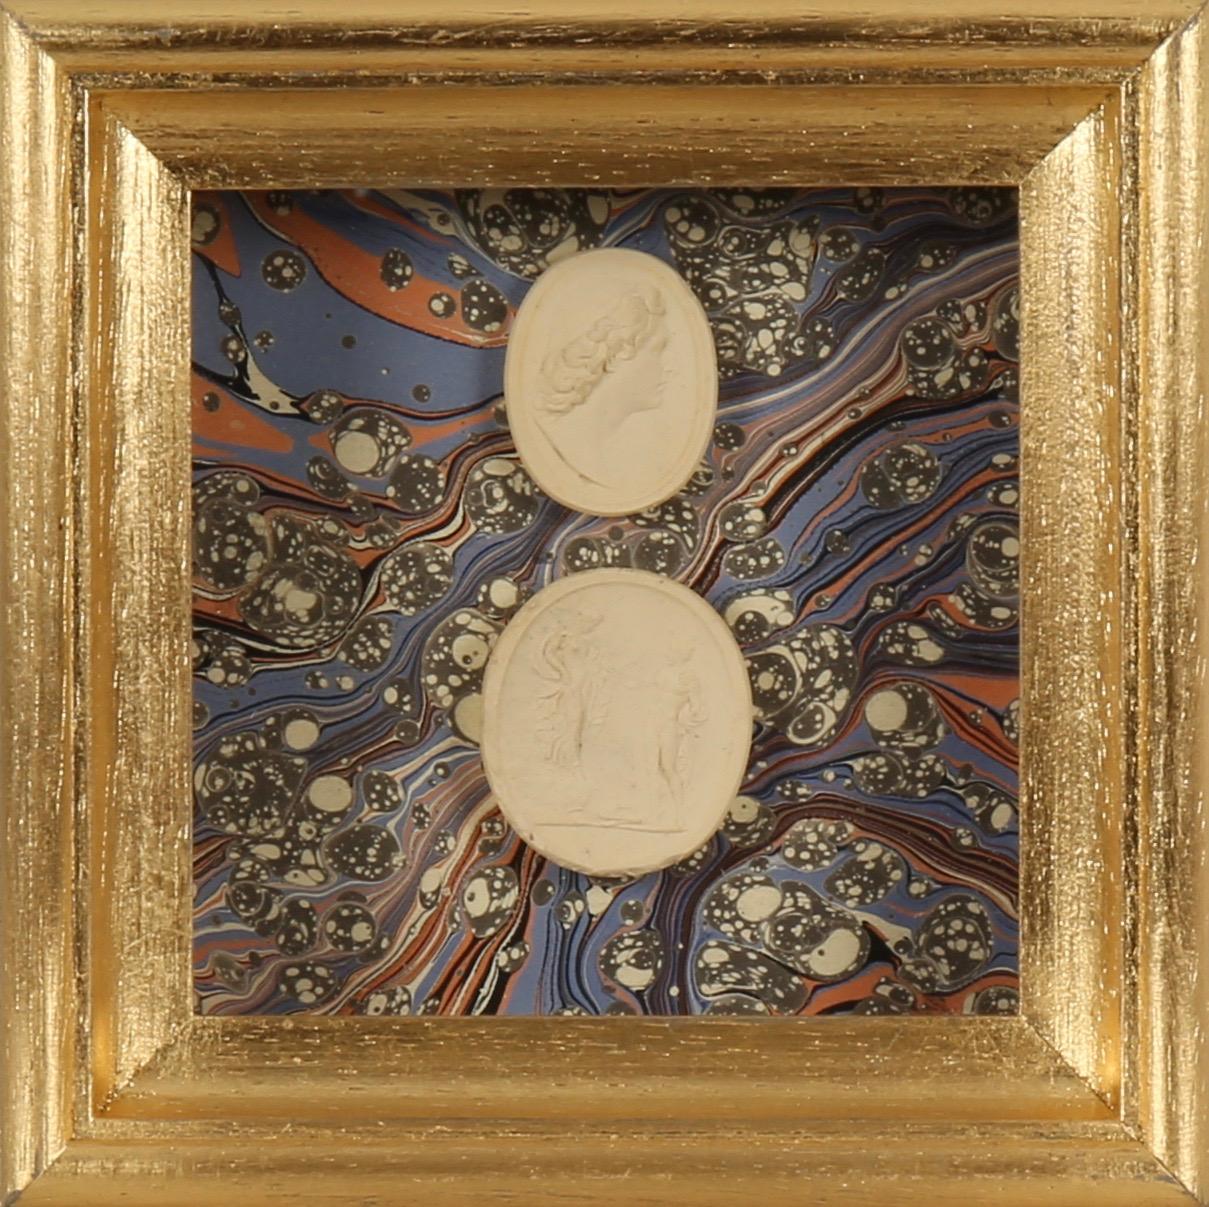 Paoletti Impronte, ‘Mussei Diversi’, Rome c1800. Grand Tour intaglio seals. - Print by  Bartolomeo Paoletti